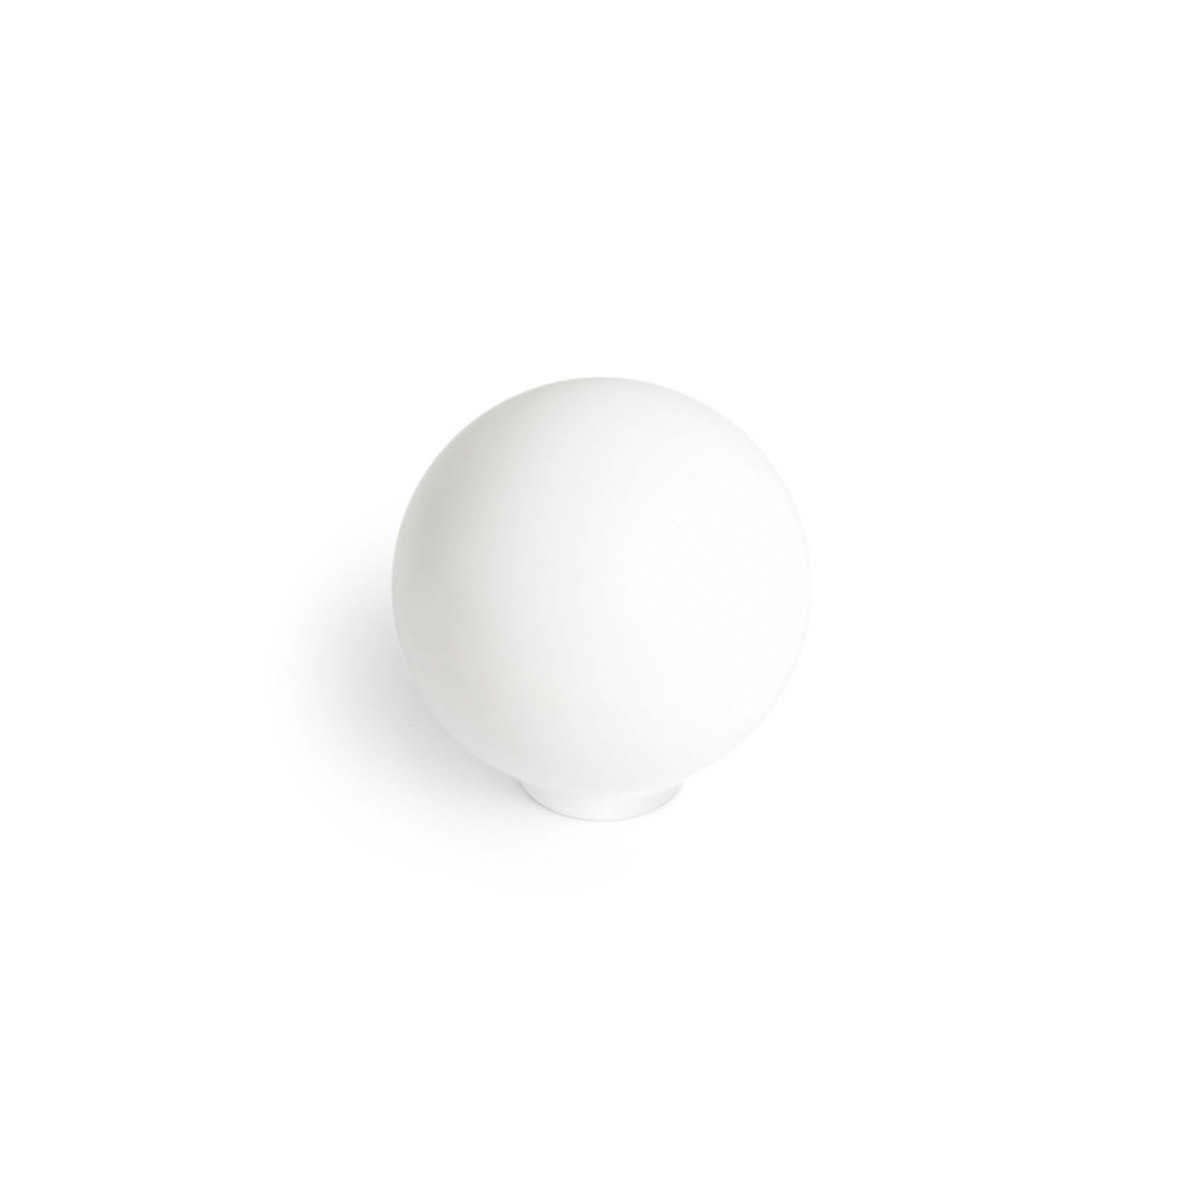 Bouton en plastique finition blanc mat, dimensions: 28x28x29mm Ø: 28mm